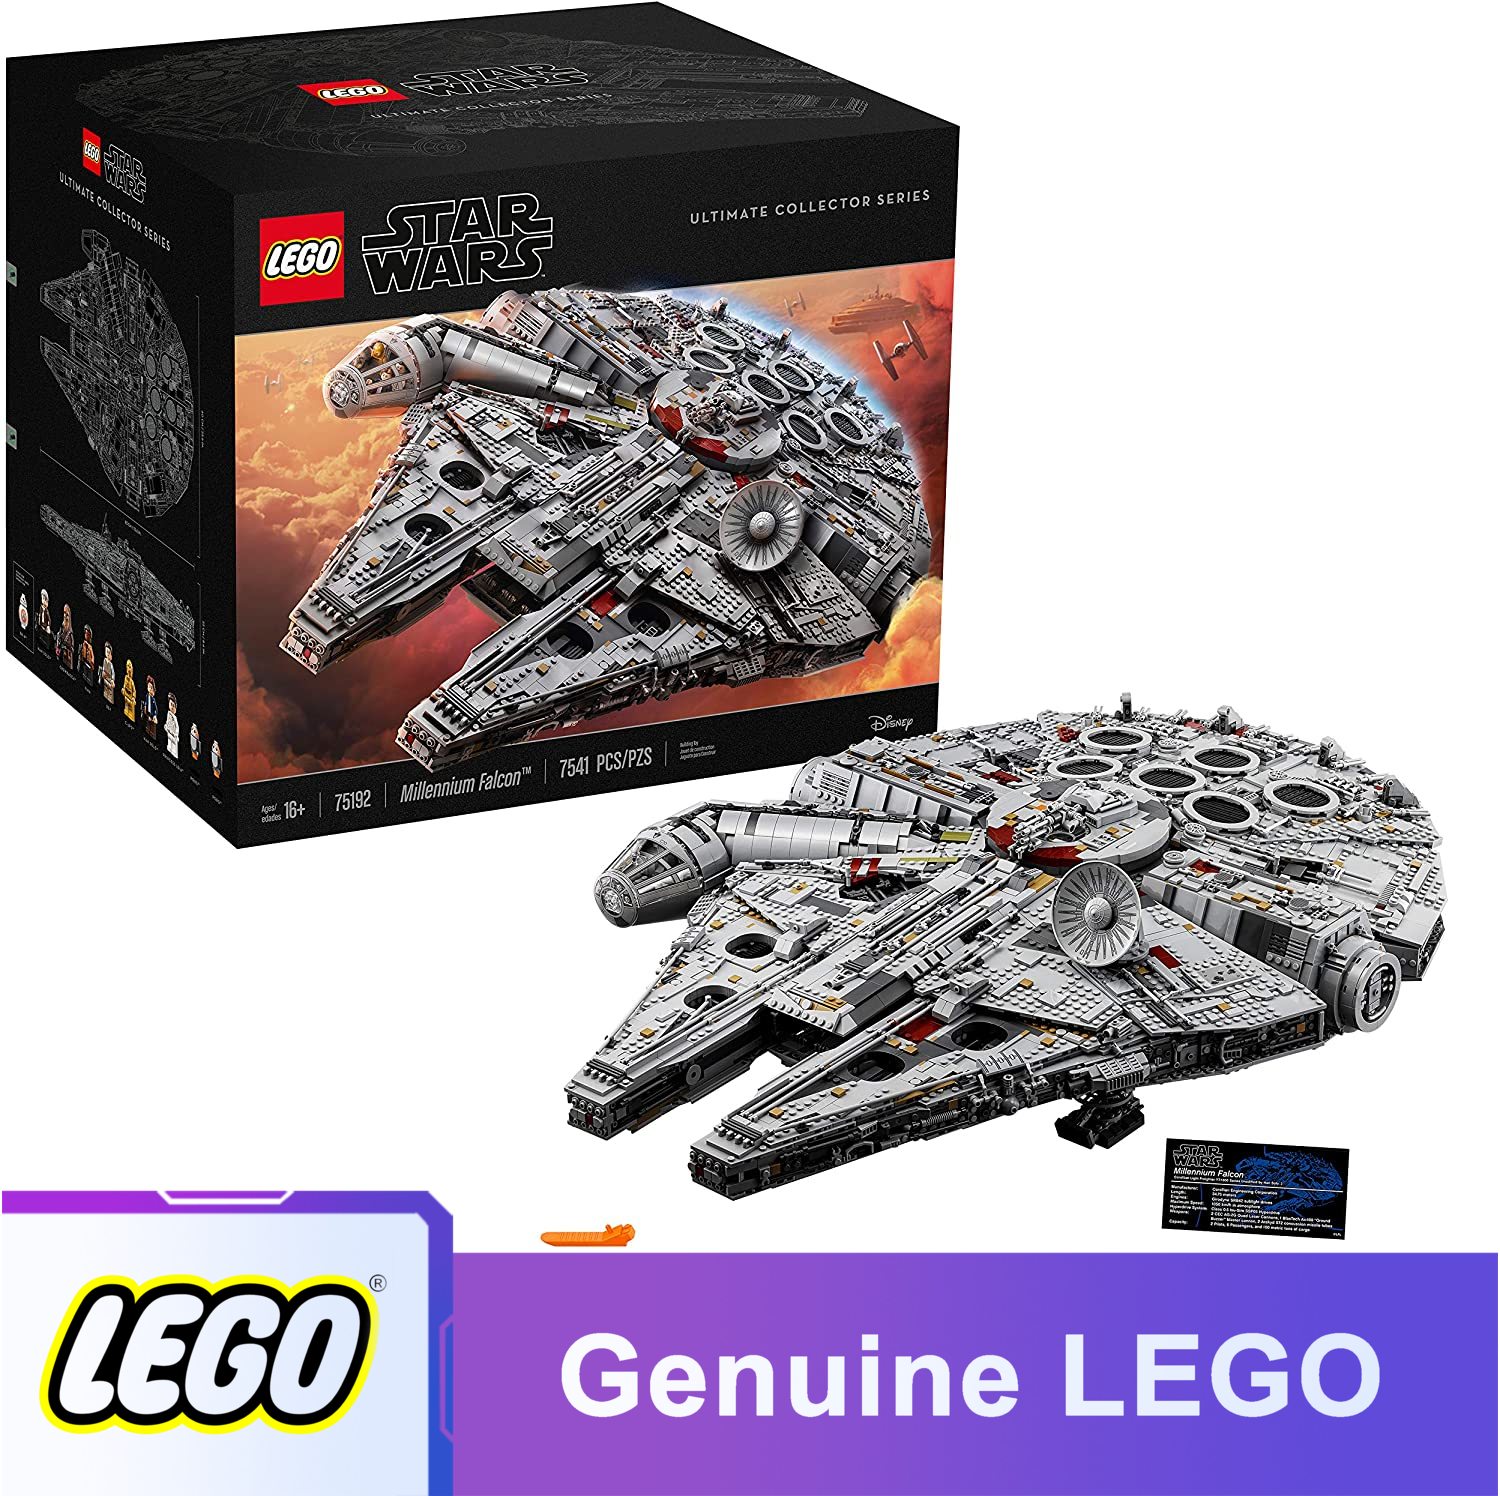 Mới Bộ đồ chơi LEGO Star Wars Ultimate Millennium Falcon 75192 Expert Build Kit và Starship Model Bộ sưu tập phim và quà tặng người lớn hay nhất (7541 mảnh)